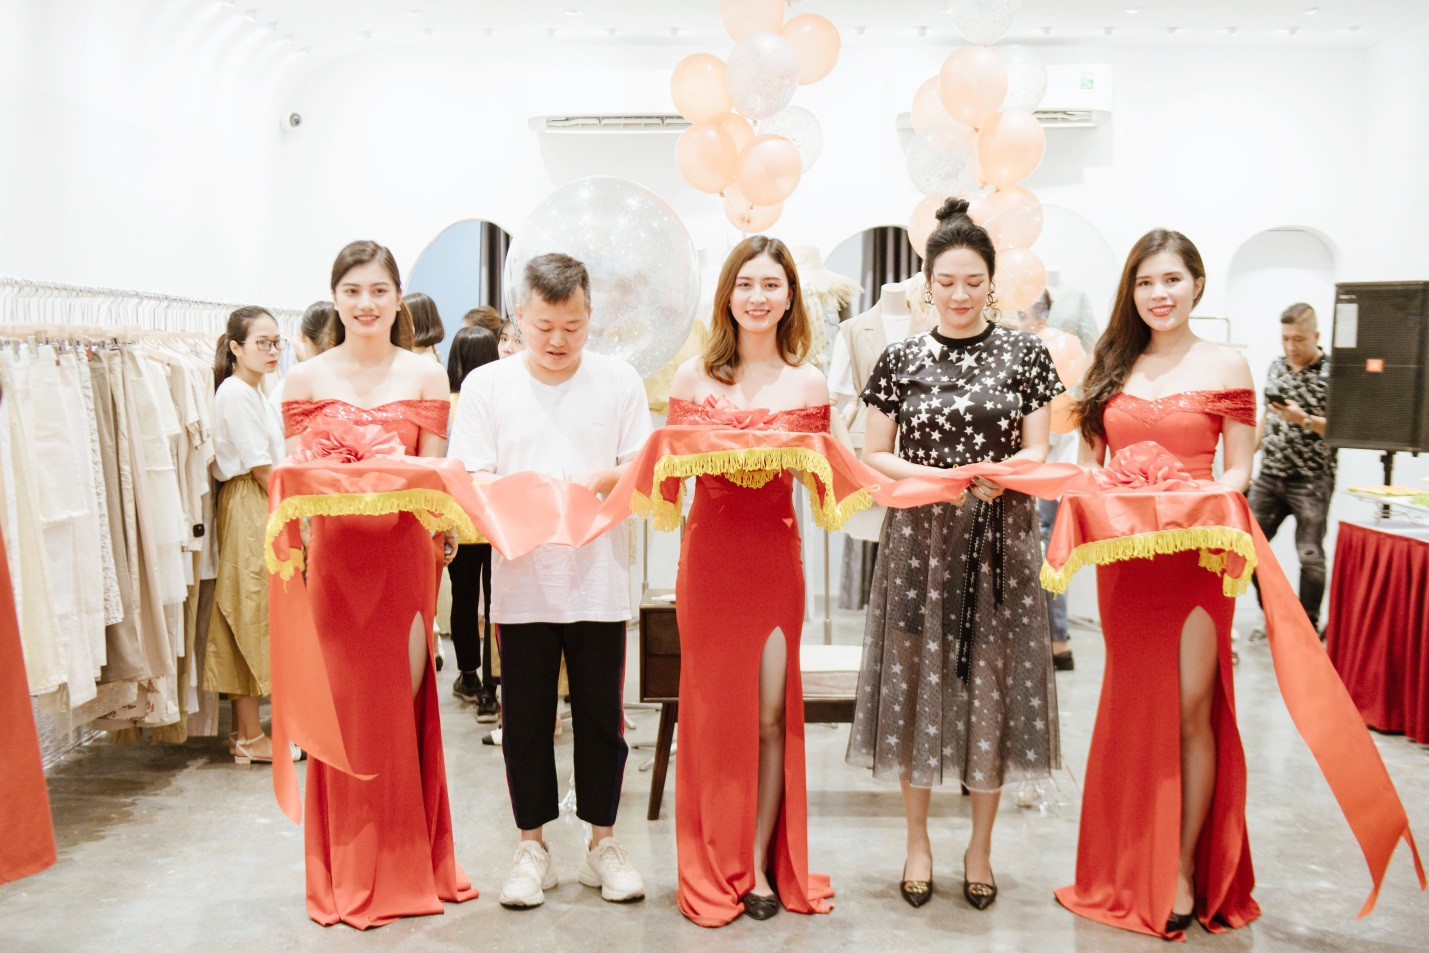 Ra mắt thương hiệu thời trang nữ Boran - GUU.vn